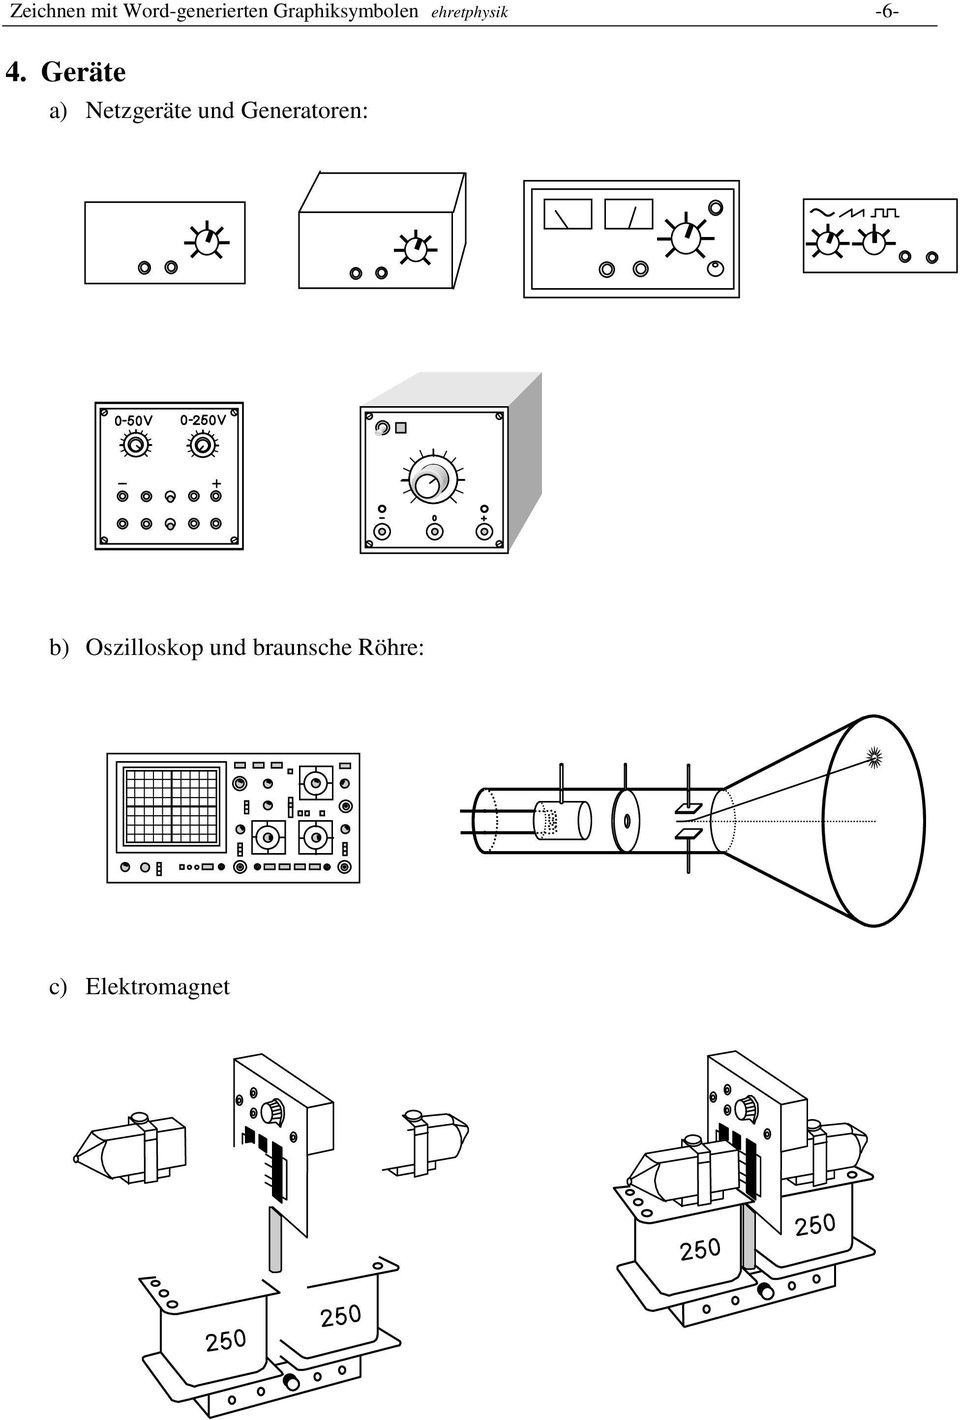 Geräte a) Netzgeräte und Generatoren: